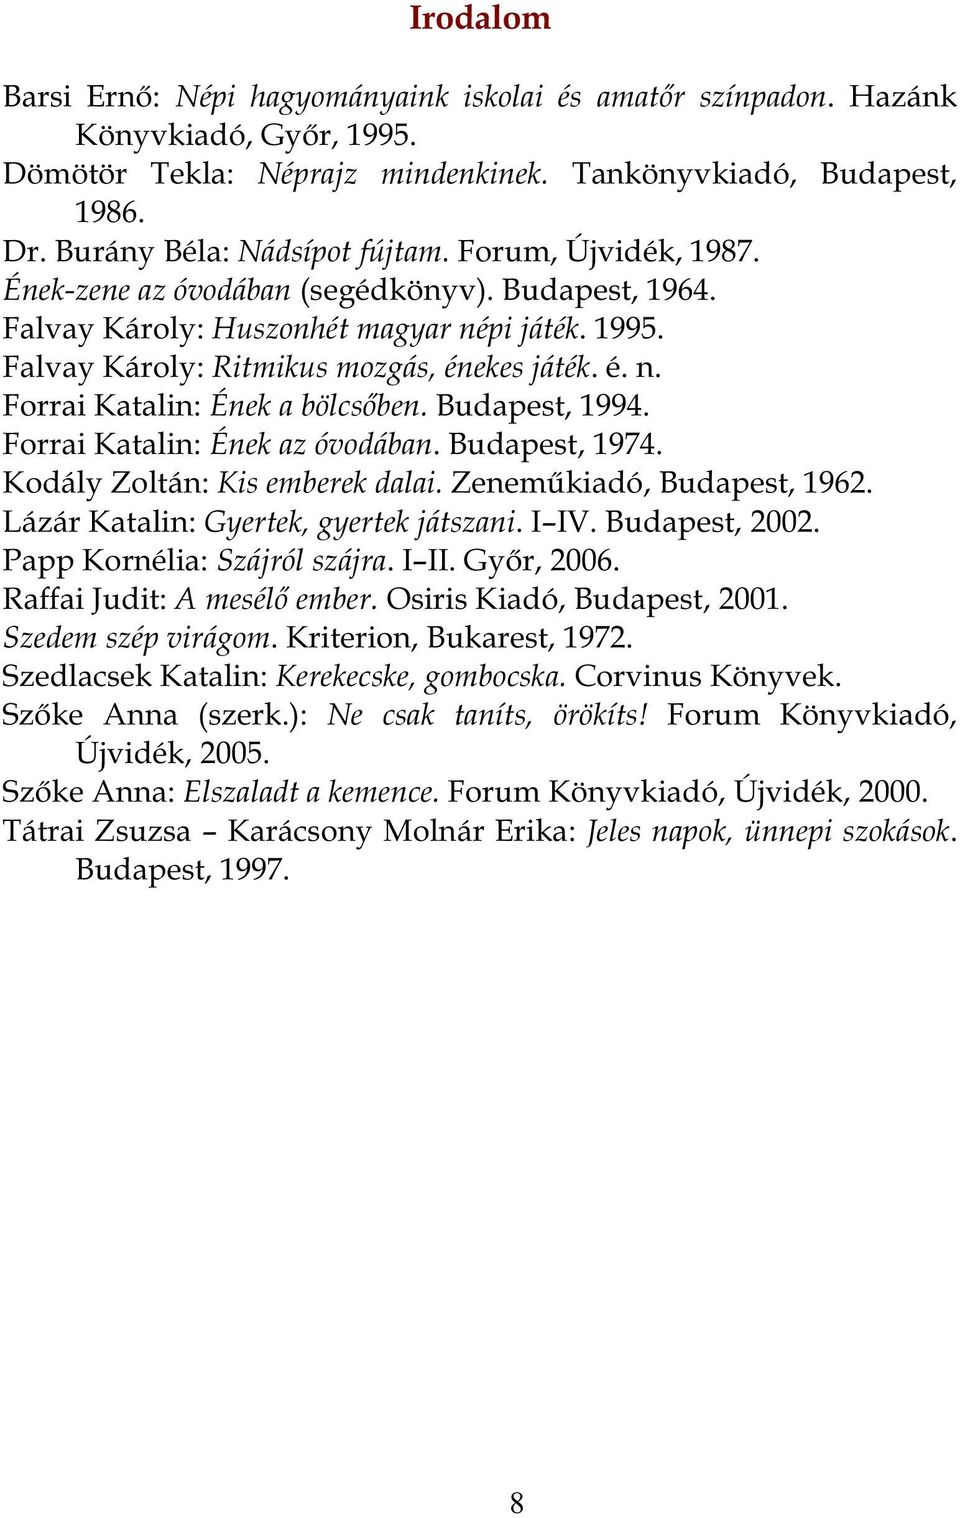 Budapest, 1994. Forrai Katalin: Ének az óvodában. Budapest, 1974. Kodály Zoltán: Kis emberek dalai. Zeneműkiadó, Budapest, 1962. Lázár Katalin: Gyertek, gyertek játszani. I IV. Budapest, 2002.